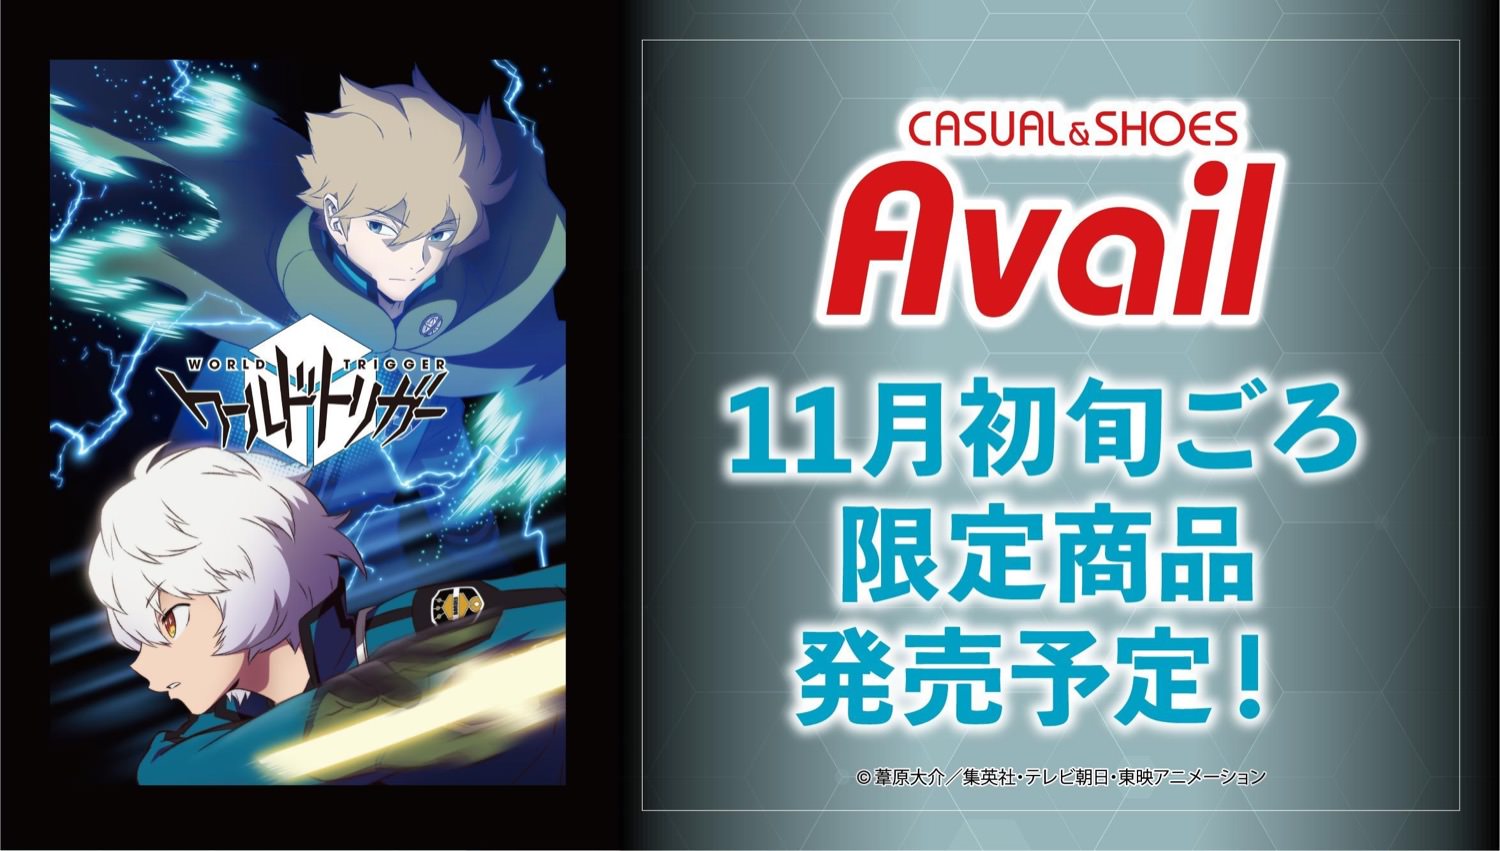 ワールドトリガー × Avail (アベイル) 11月初旬よりコラボ第2弾発売!